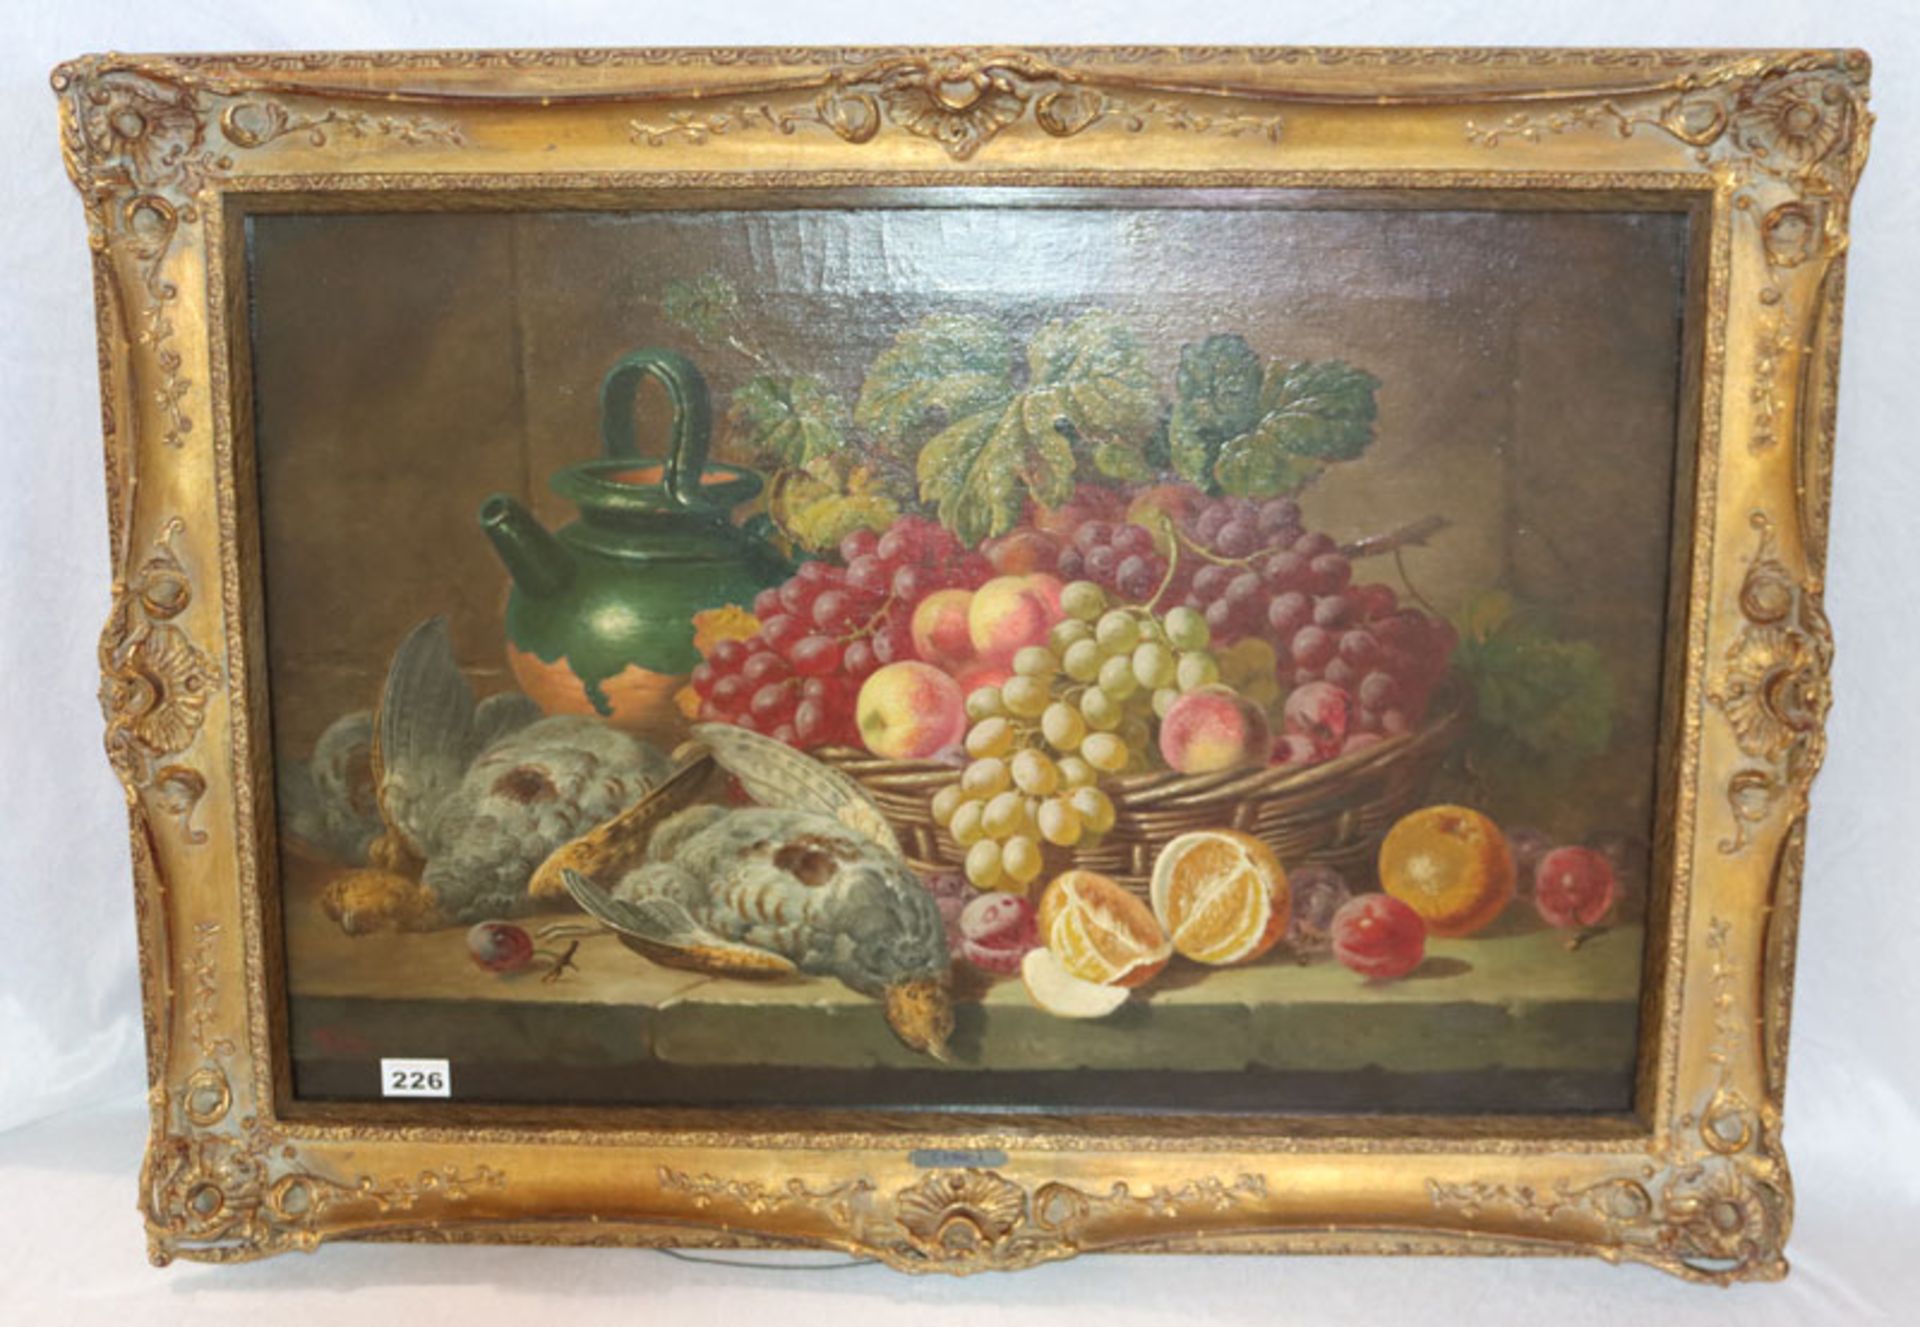 Gemälde ÖL/LW 'Früchtestillleben mit Rebhühner', signiert C. T. Bale, Chales Thomas Bale, englischer